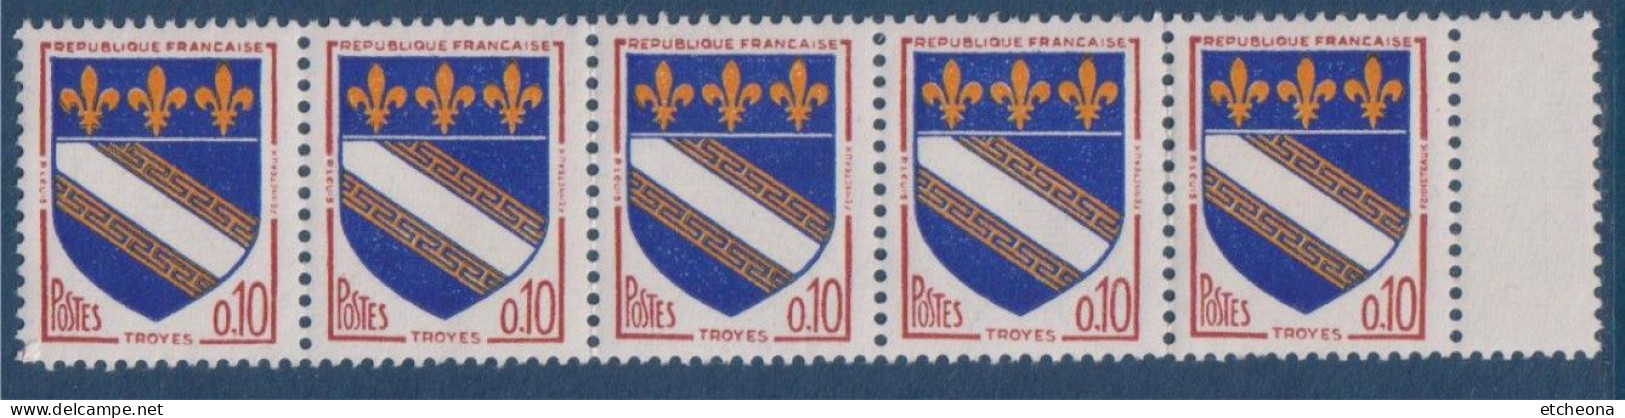 Troyes Armoiries De Villes IV N°1353 Bande De 5 Timbres Neufs Avec Pont De Feuille à Droite - 1941-66 Wapenschilden